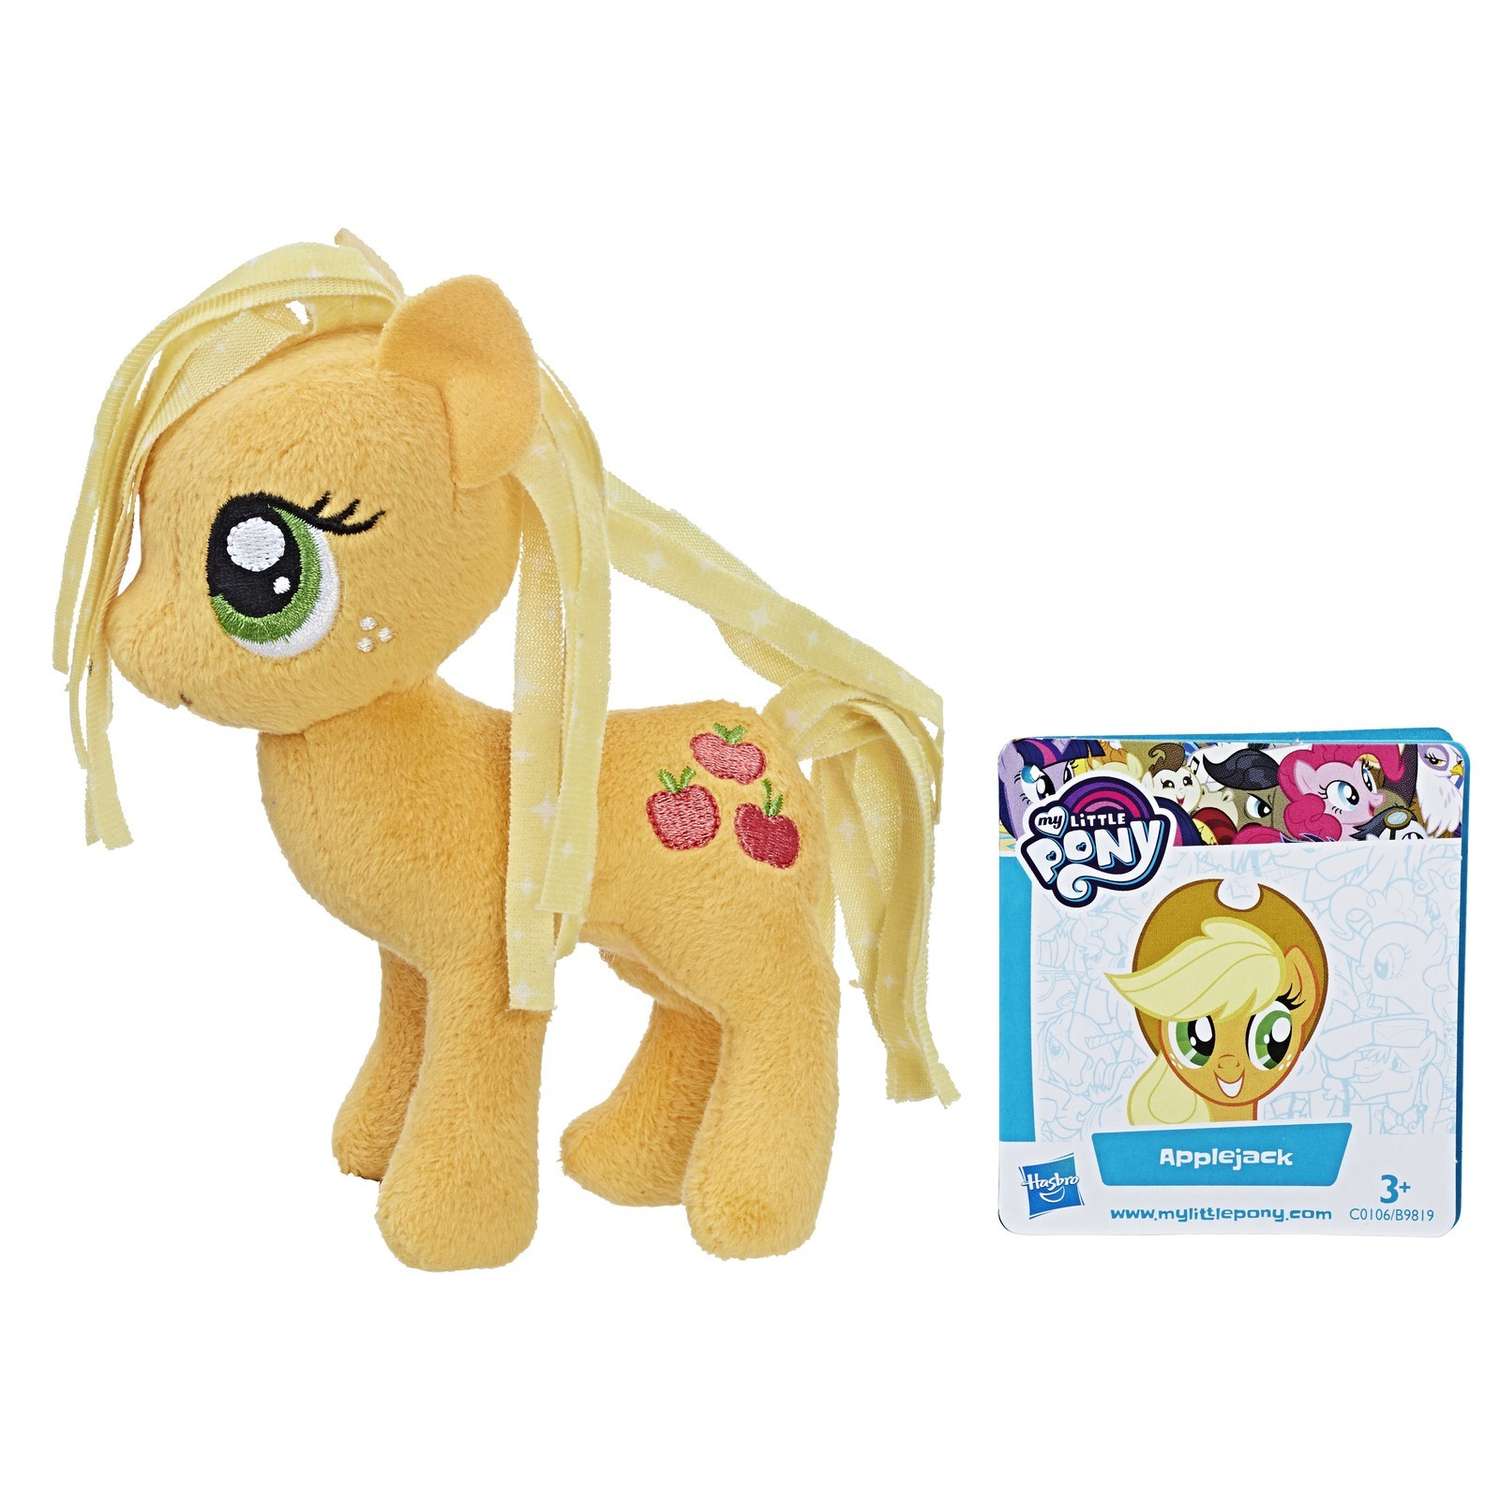 Игрушка мягкая My Little Pony Пони Эпплджек 2 с волосами C0106EU4 - фото 2